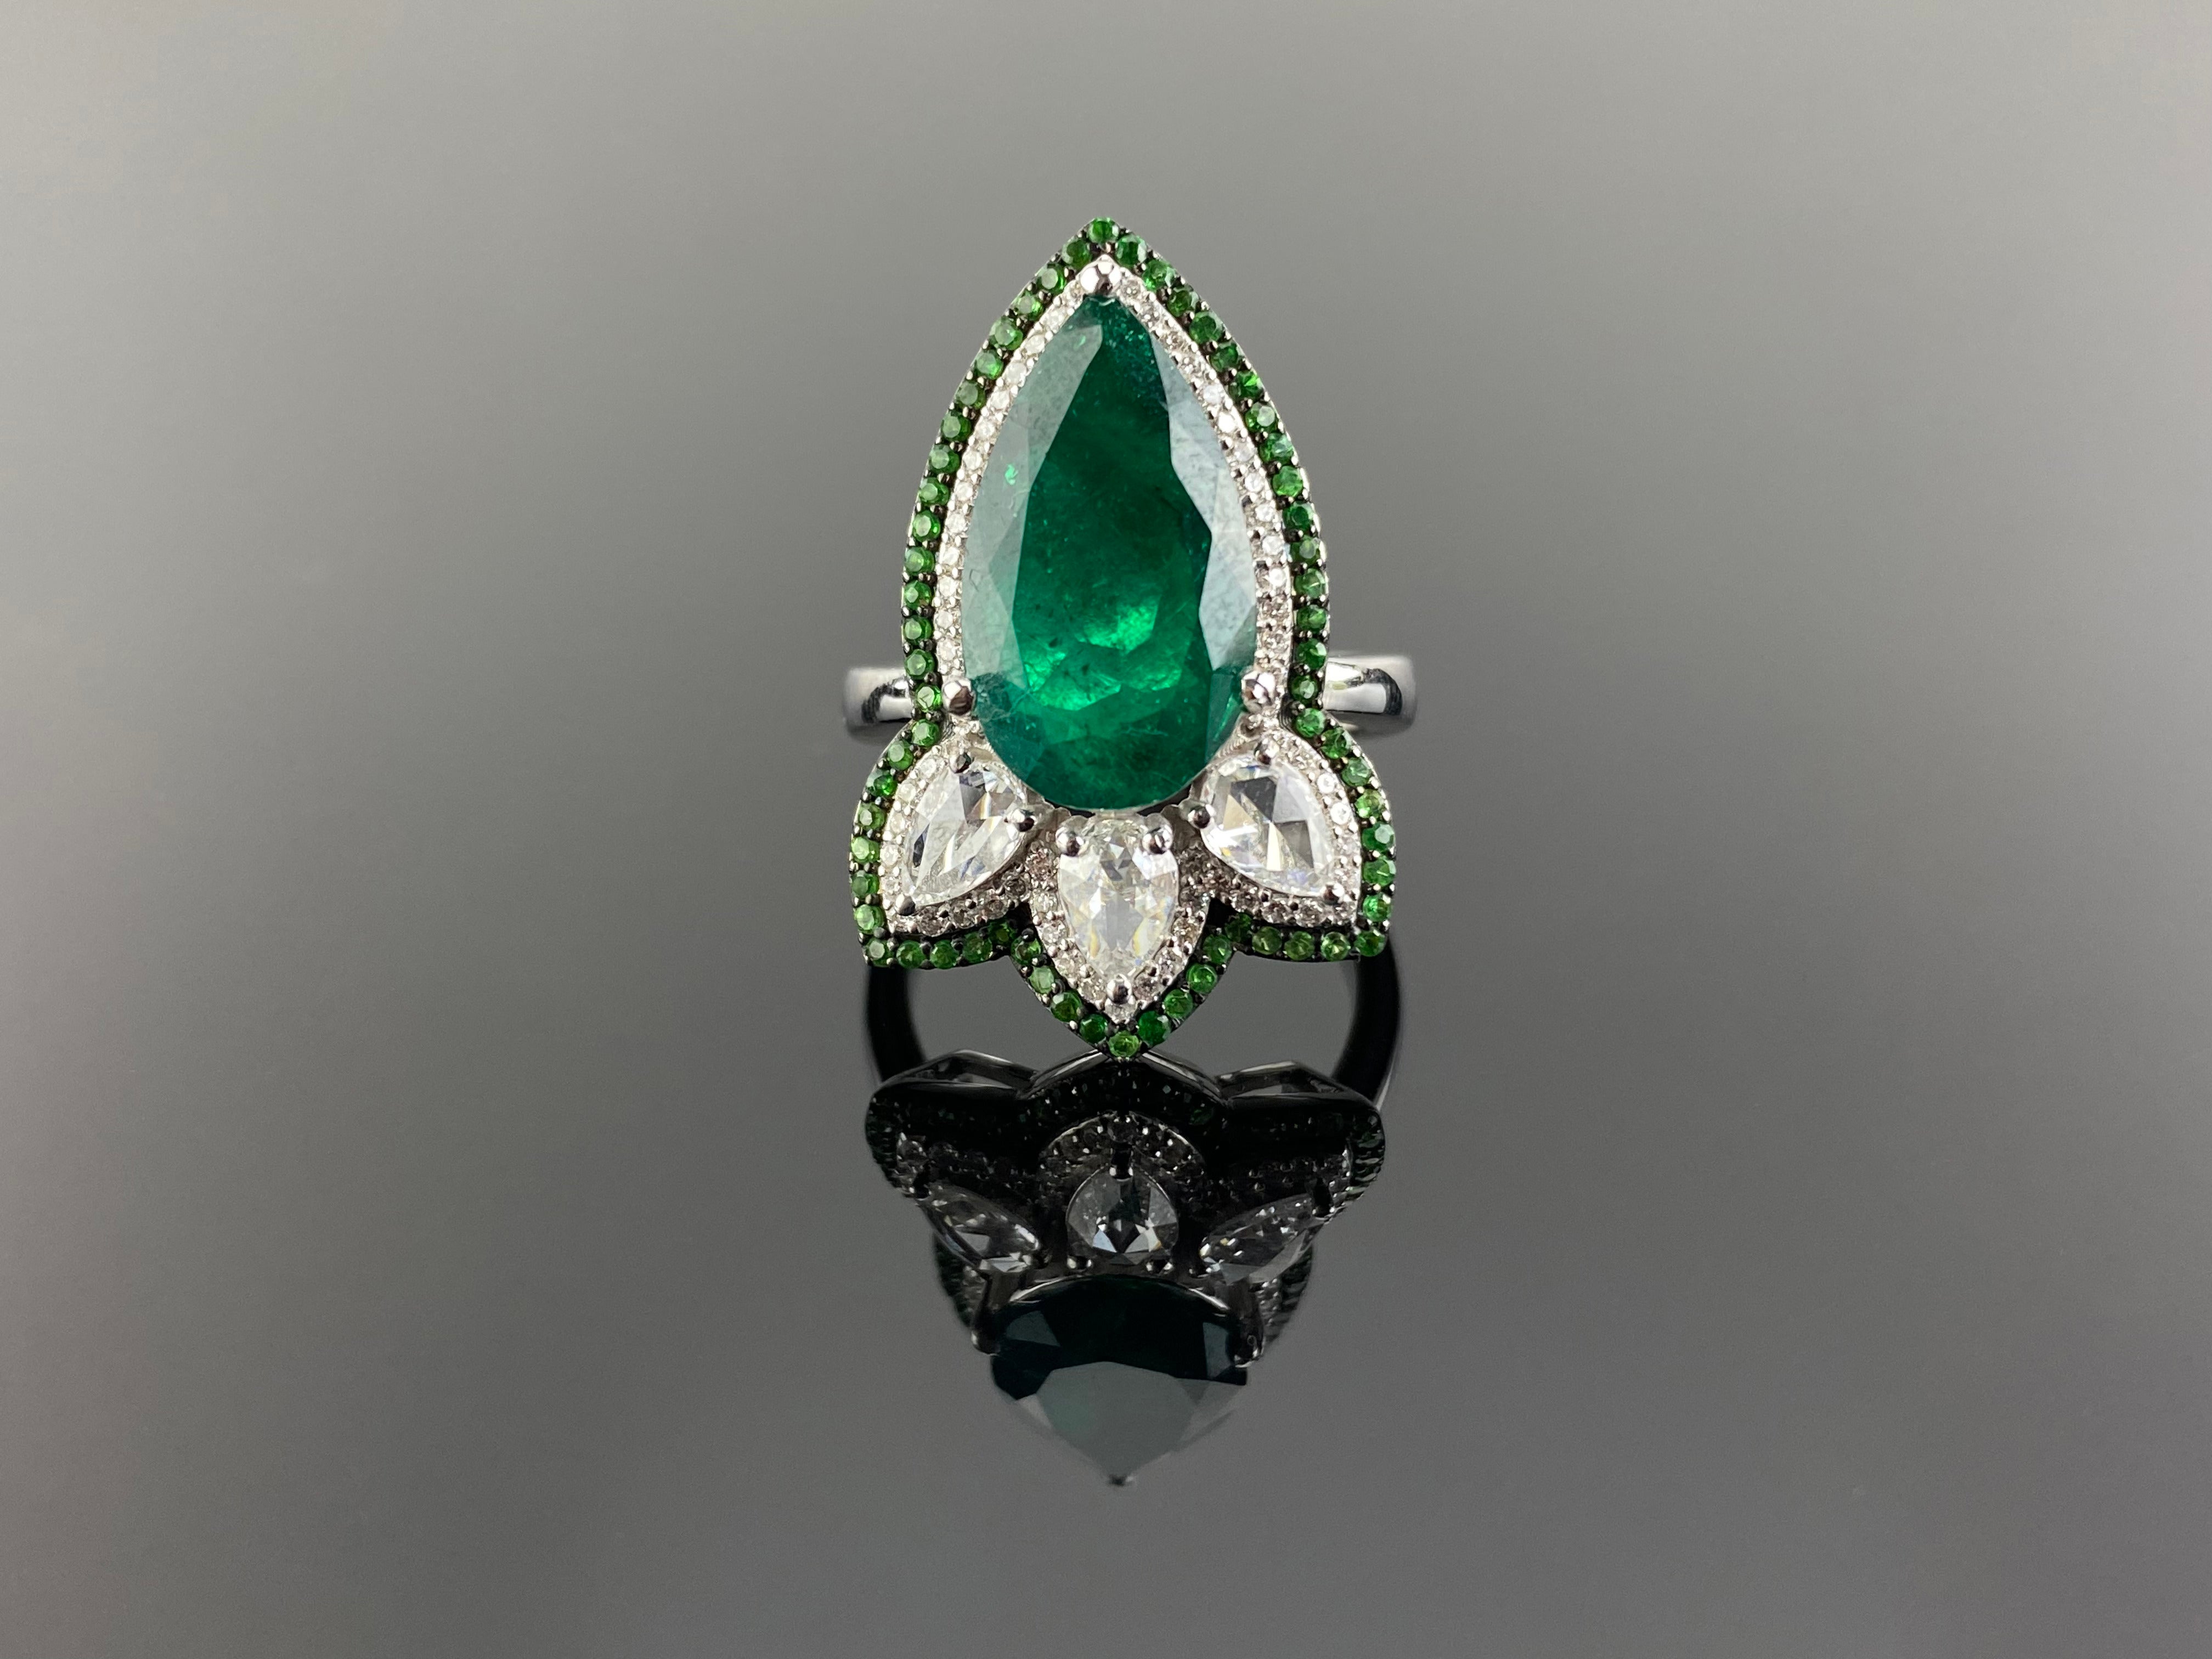 Ein sehr einzigartig gestalteter, zertifizierter, natürlicher, birnenförmiger sambischer Smaragd von 4,08 Karat, mit 0,61 Karat birnenförmigen weißen Diamanten, umgeben von Diamanten und Tsavoriten - was ihm einen Art-Deco-Look verleiht. Der